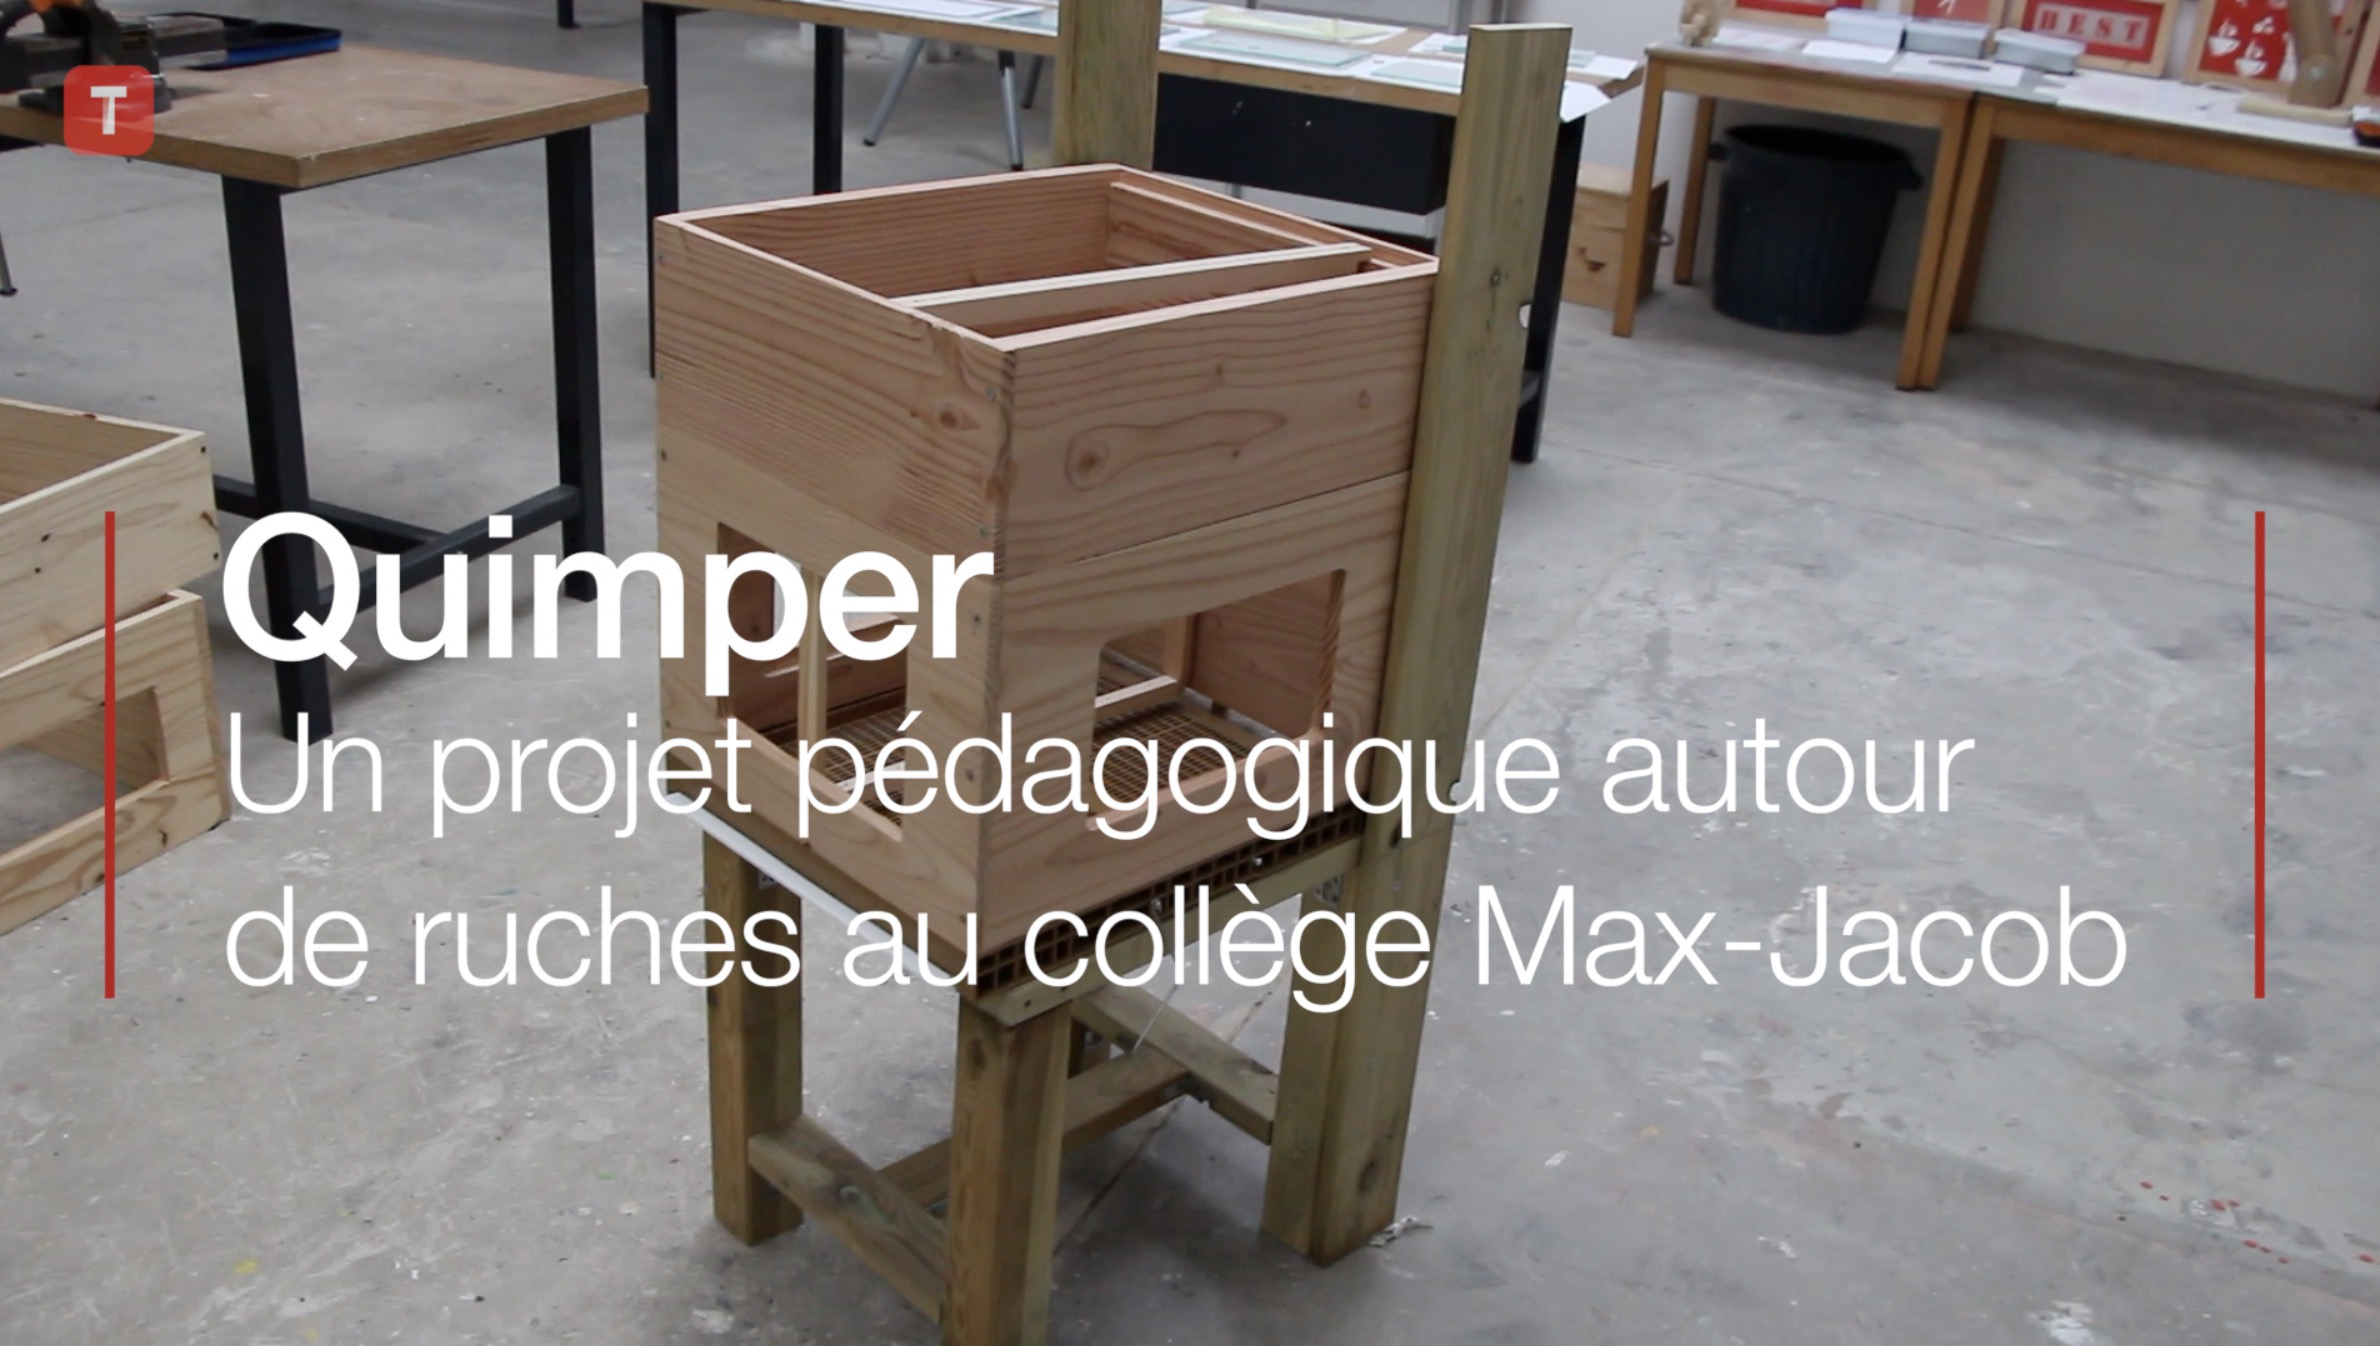 Quimper. Un projet pédagogique autour de ruche au collège Max-Jacob (Le Télégramme)